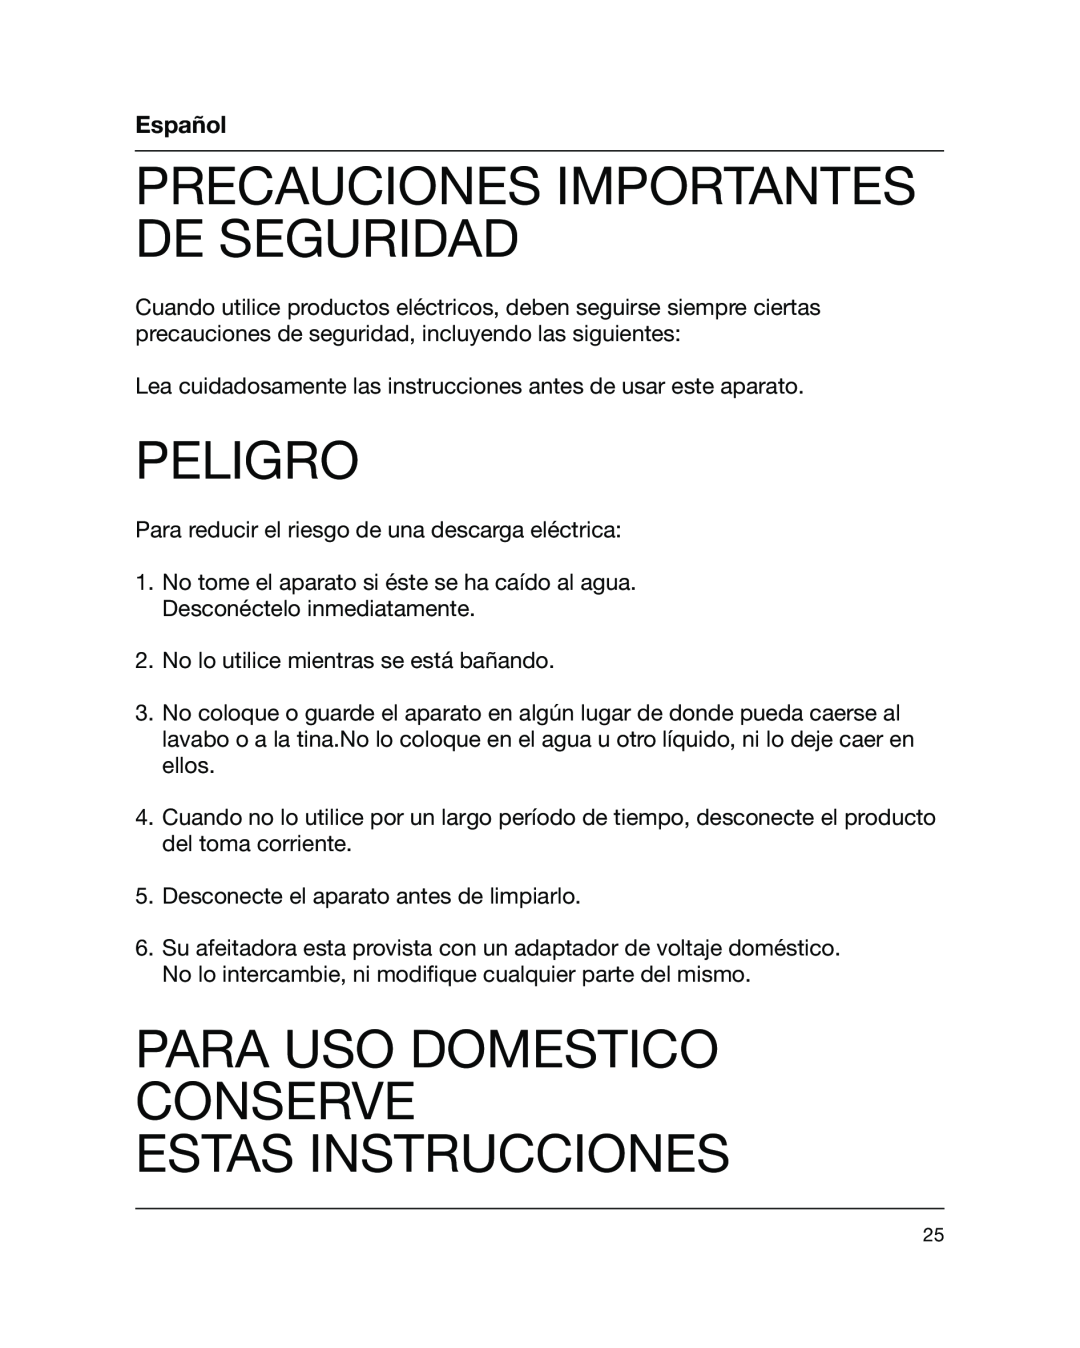 Braun 5441 manual Precauciones Importantes De Seguridad, Peligro, Para Uso Domestico Conserve Estas Instrucciones, Español 